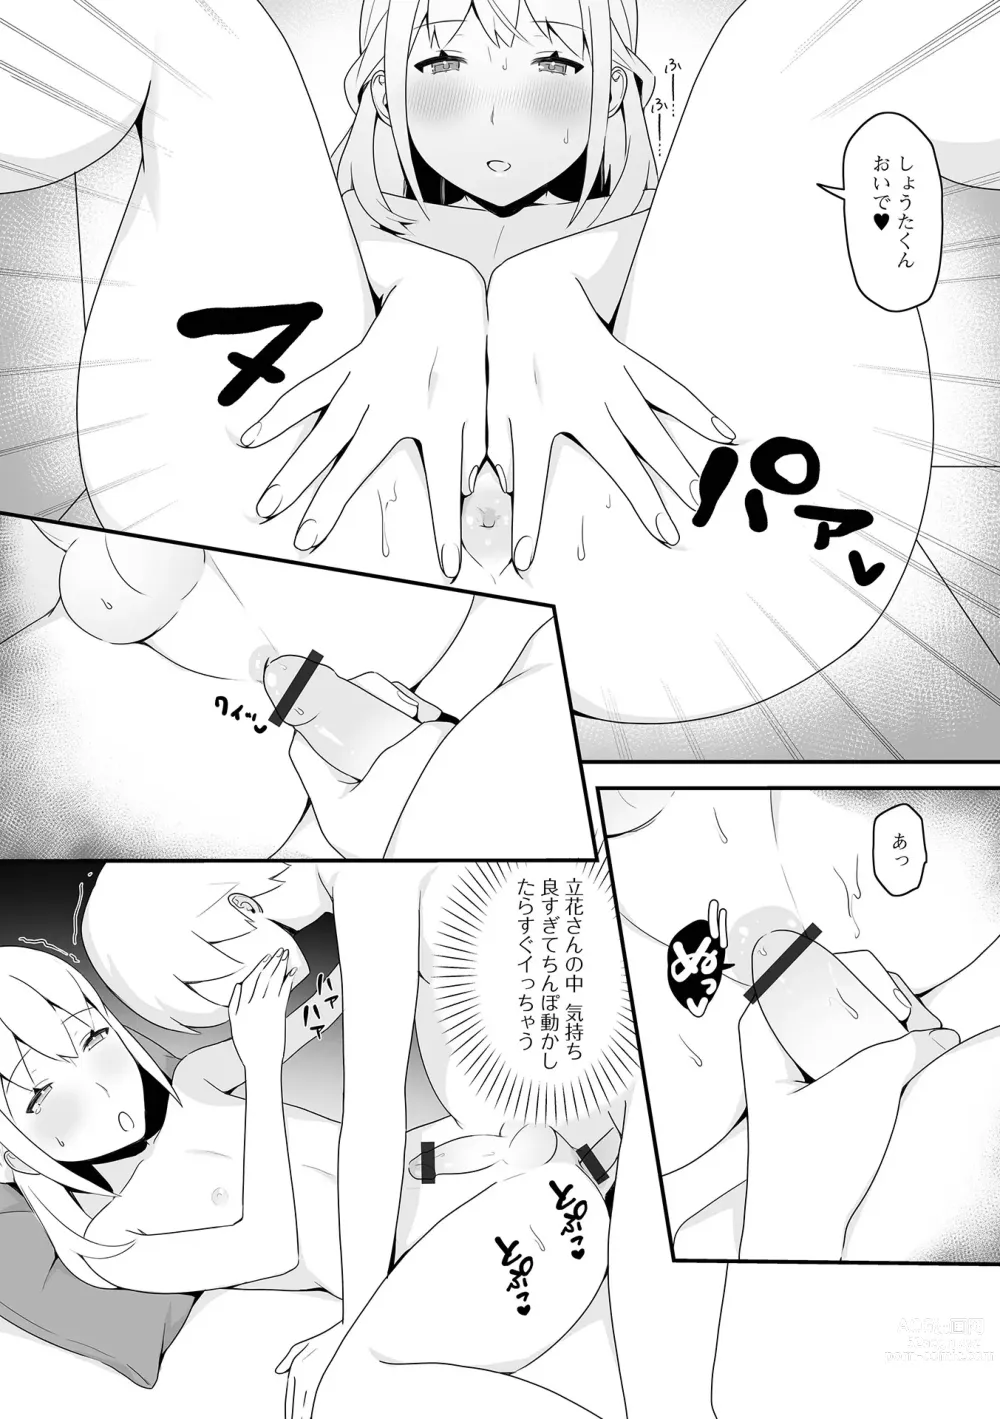 Page 97 of manga Gekkan Web Otoko no Ko-llection! S Vol. 85